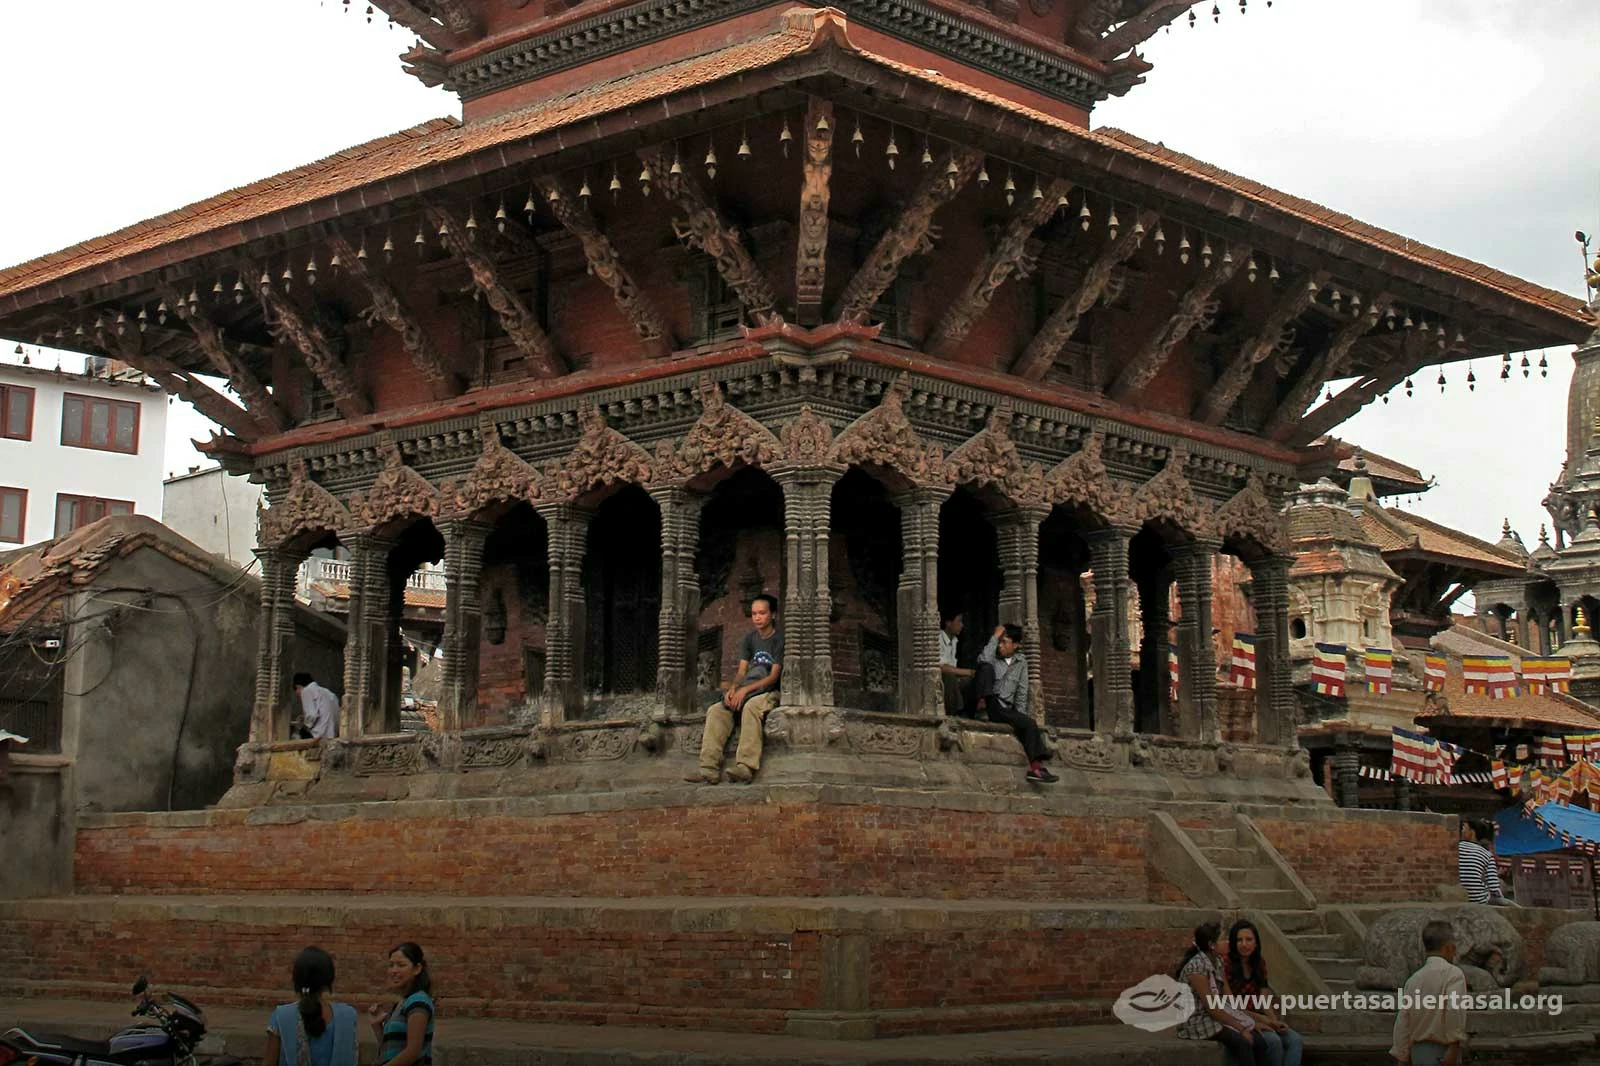 El hiduismo es la religión dominante en Nepal